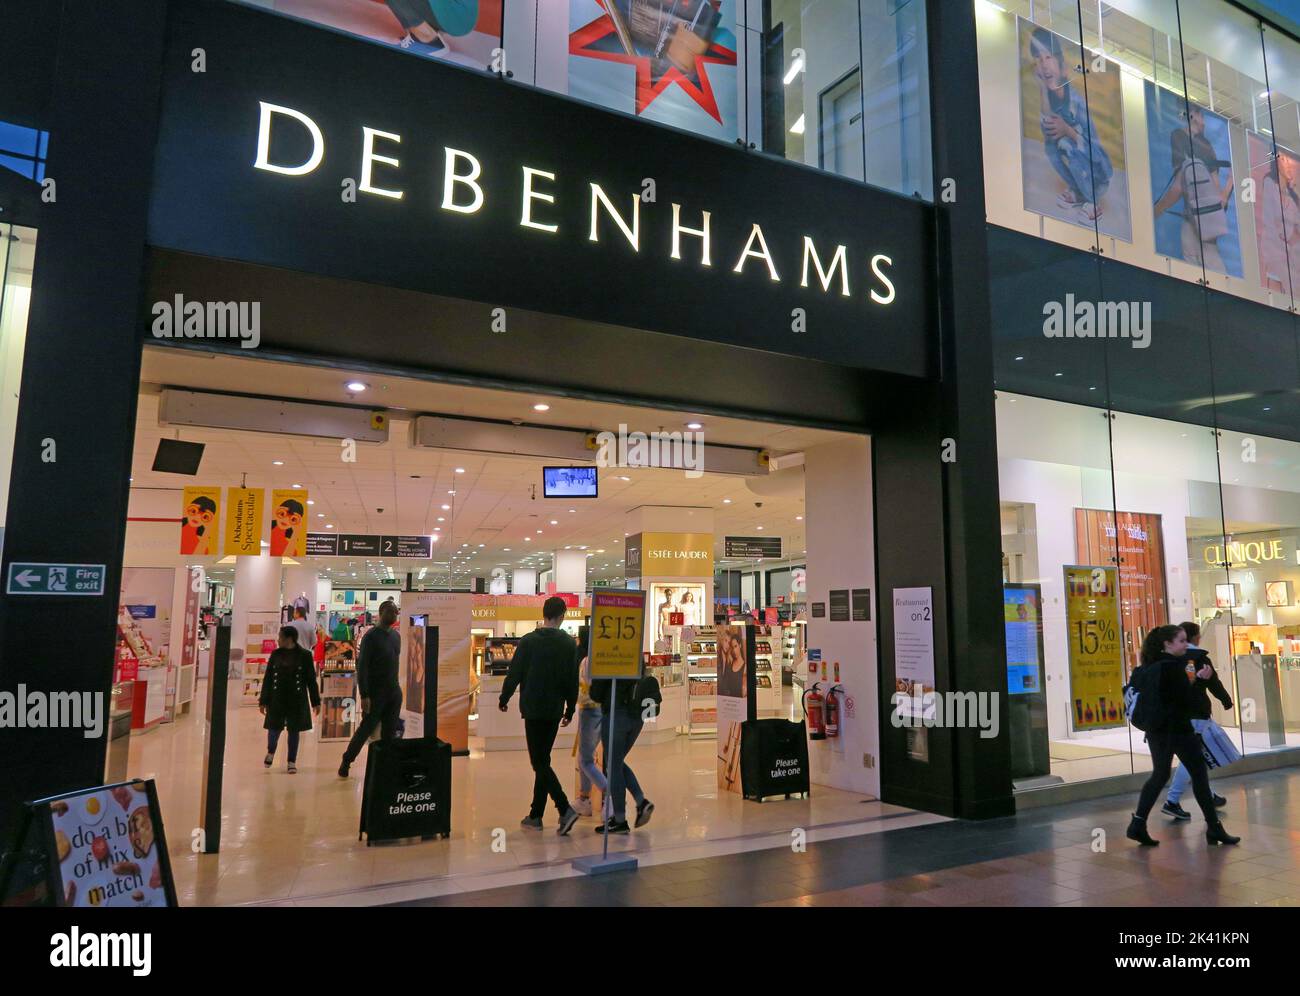 Magasin Debenhams occupé avant fermeture, dans le centre commercial Warrington Golden Square, ouvert aux acheteurs, Cheshire, Angleterre, Royaume-Uni, WA1 Banque D'Images